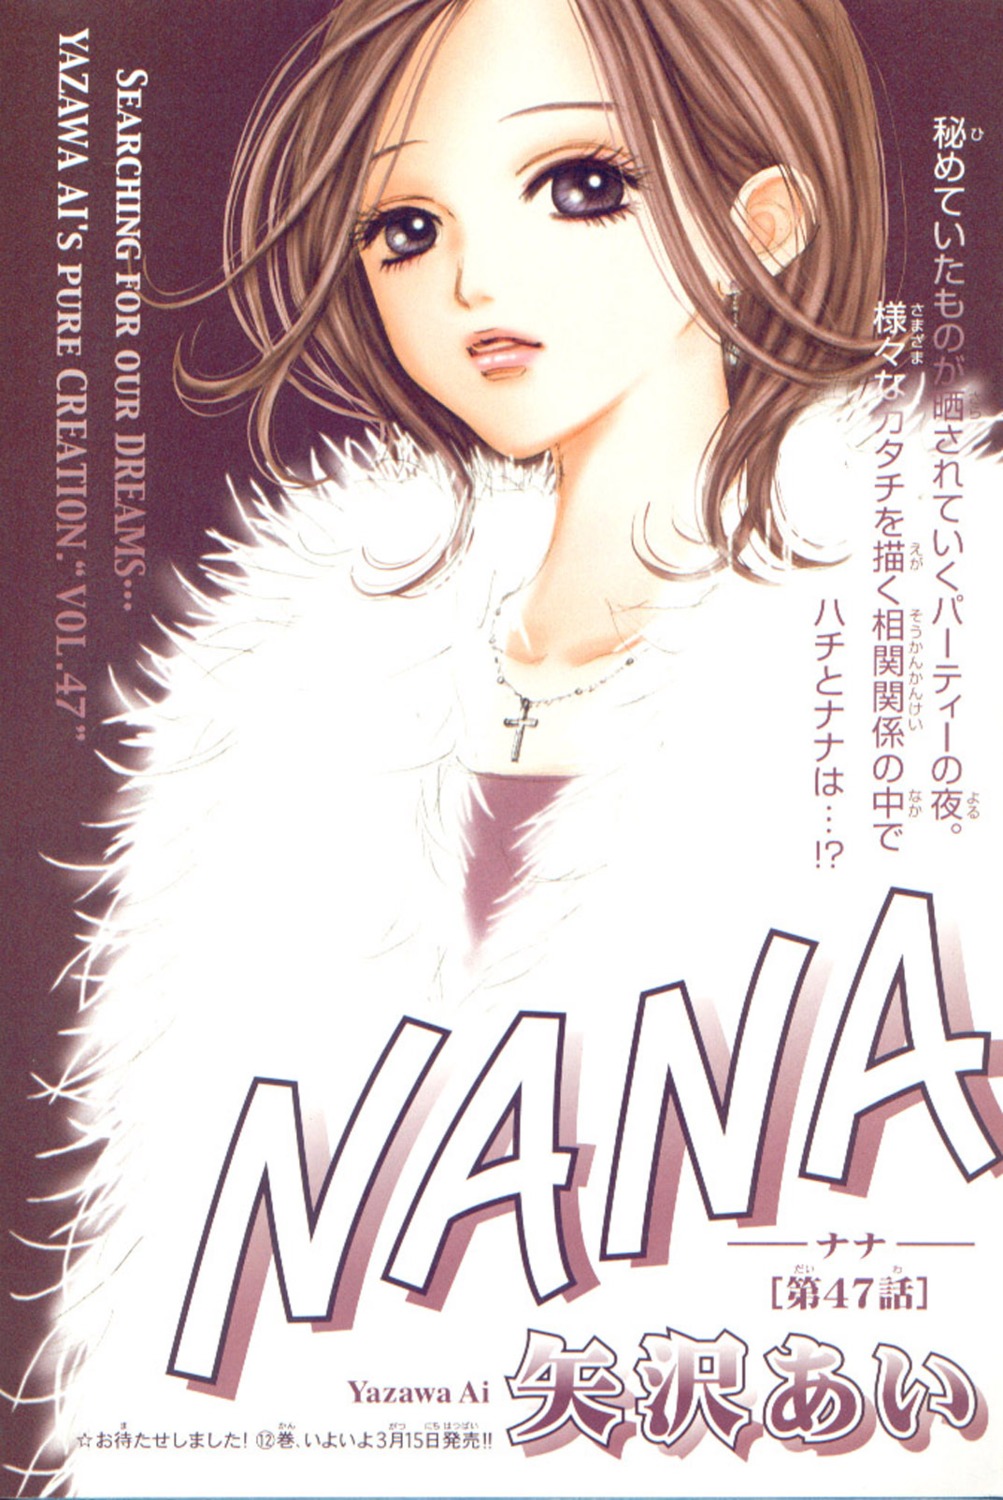 komatsu_nana nana_(series) yazawa_ai